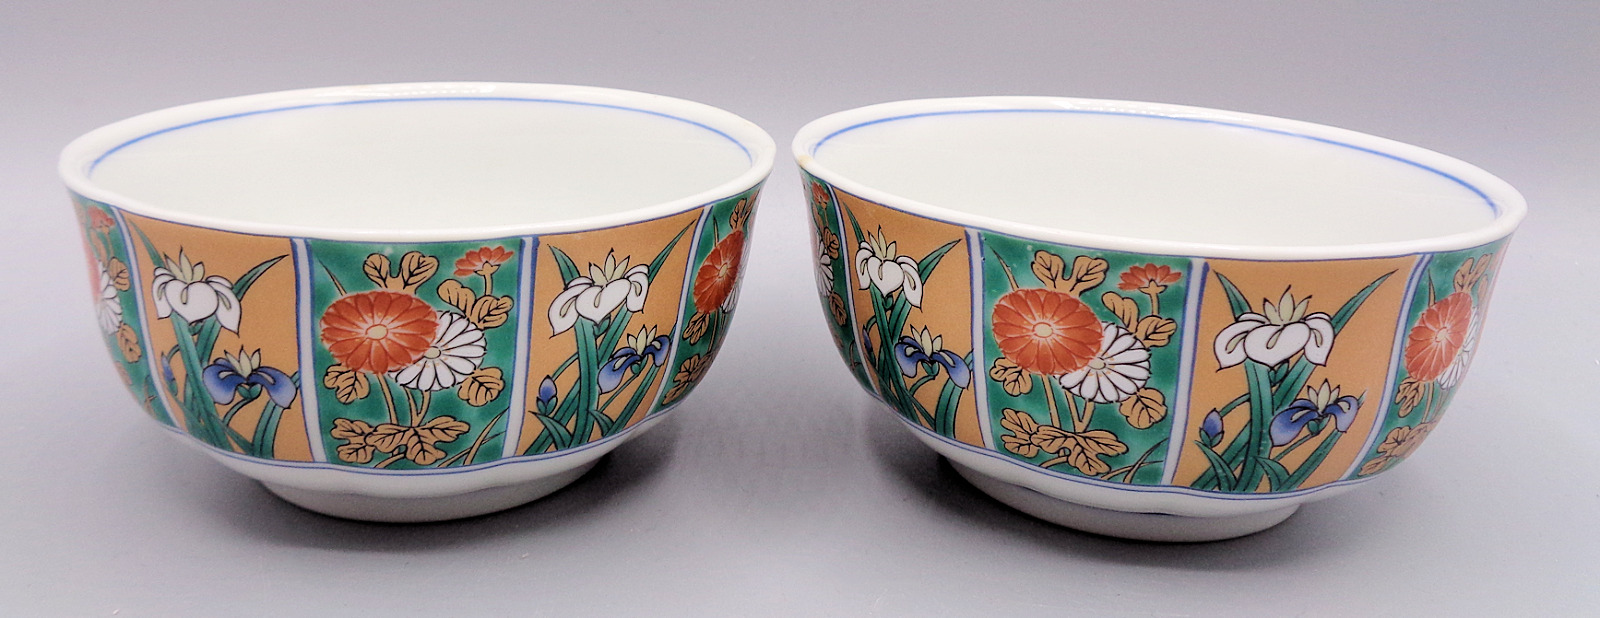 Vintage Asian Floral Orange Green White Porcelain Rice Bowls Flowers, Set of 2